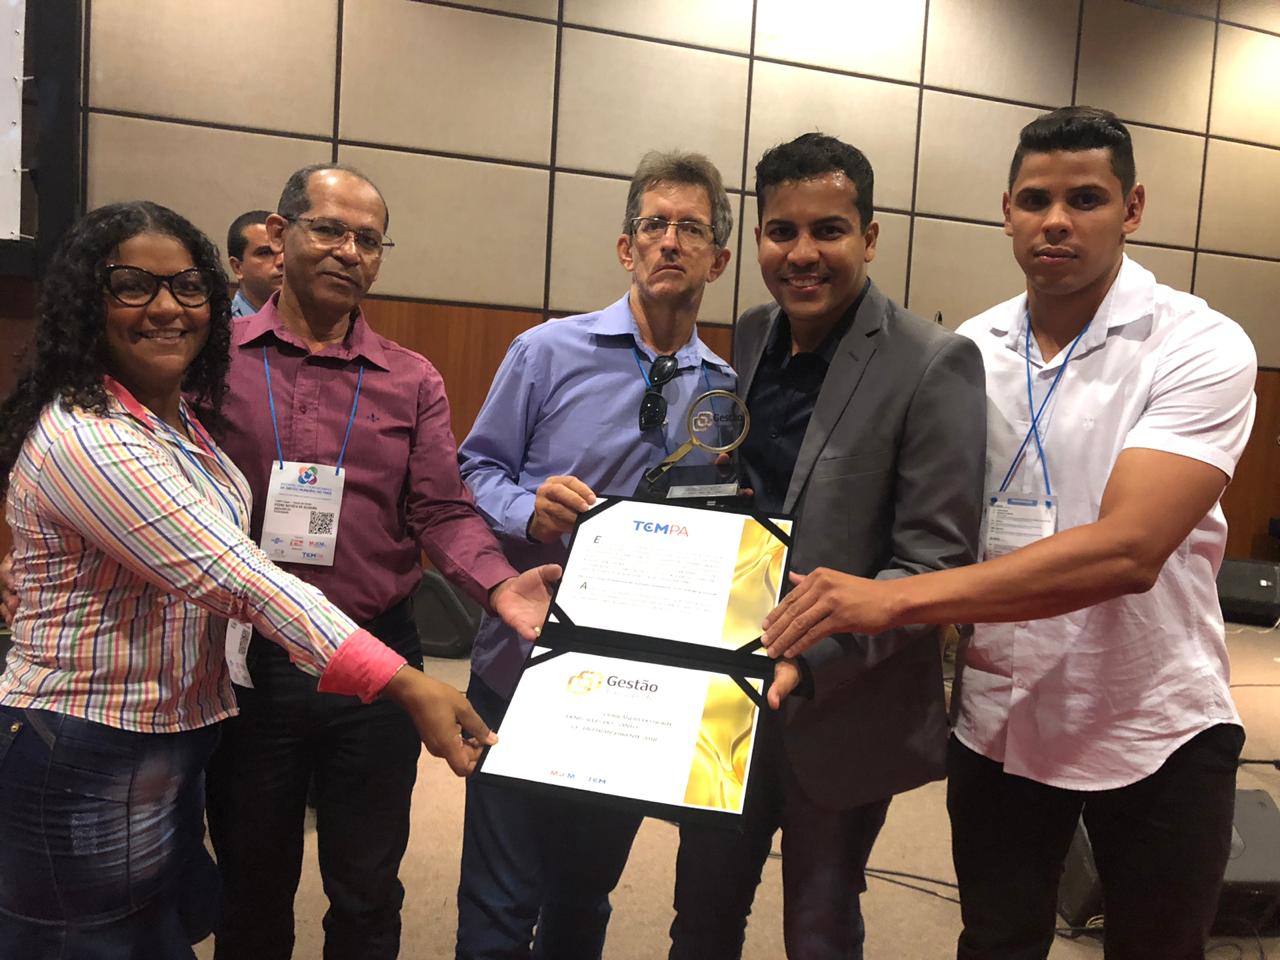 Denis Alves recebe certificado Gestor Transparente em Belém